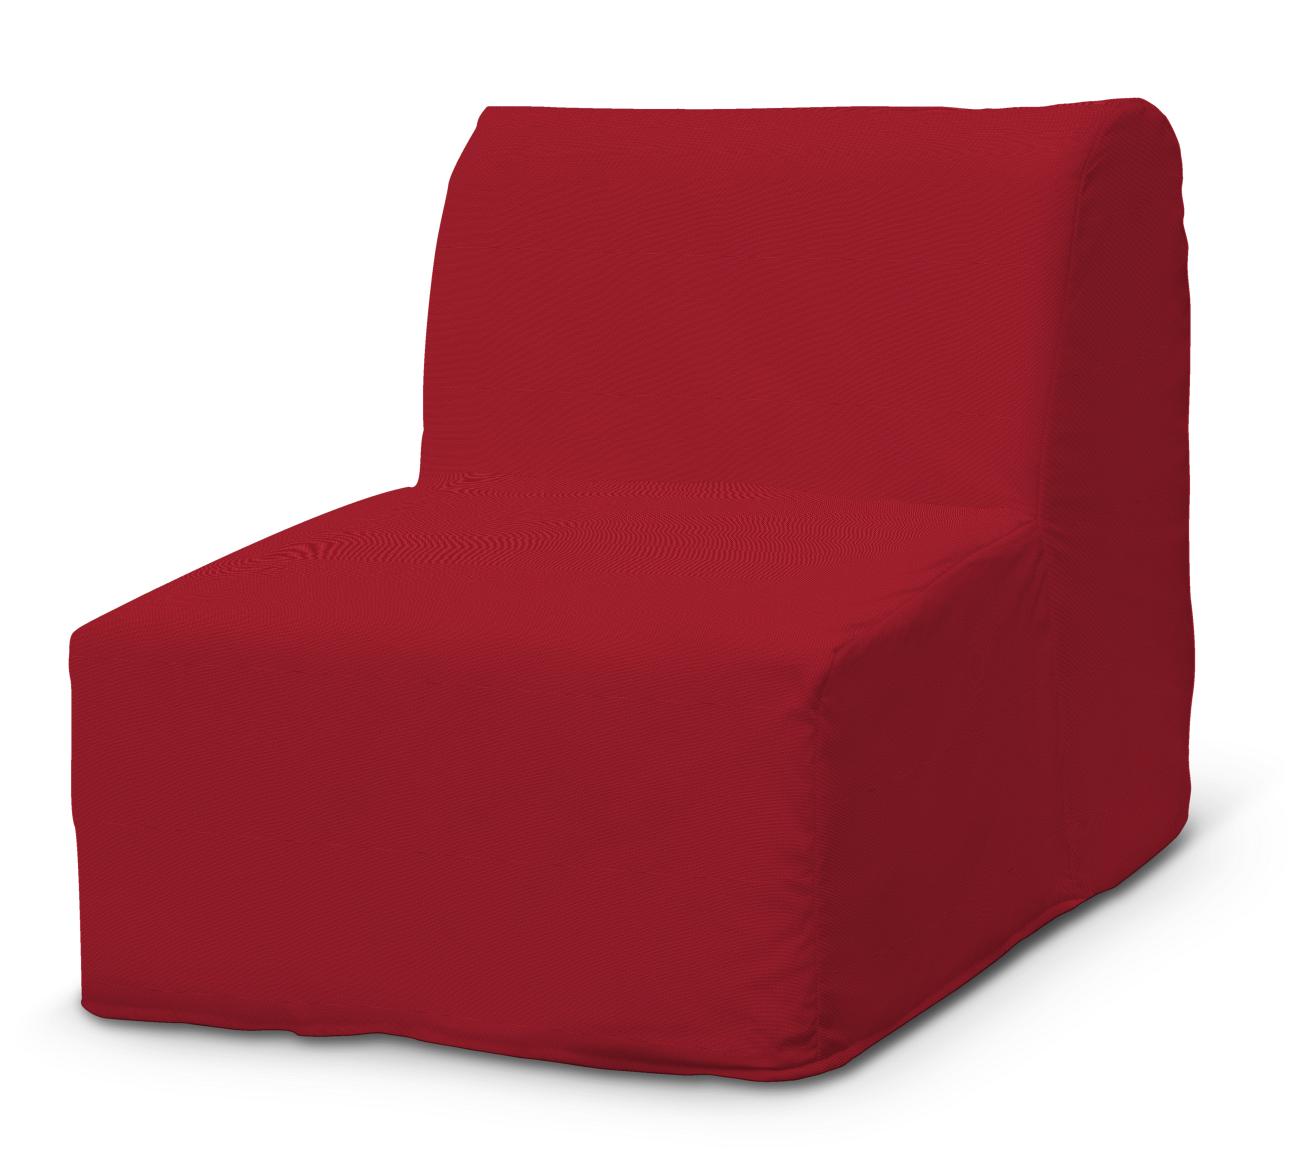 Dekoria Potah na křeslo Lycksele jednoduchý, tmavě červená , fotel Lycksele, Etna, 705-60